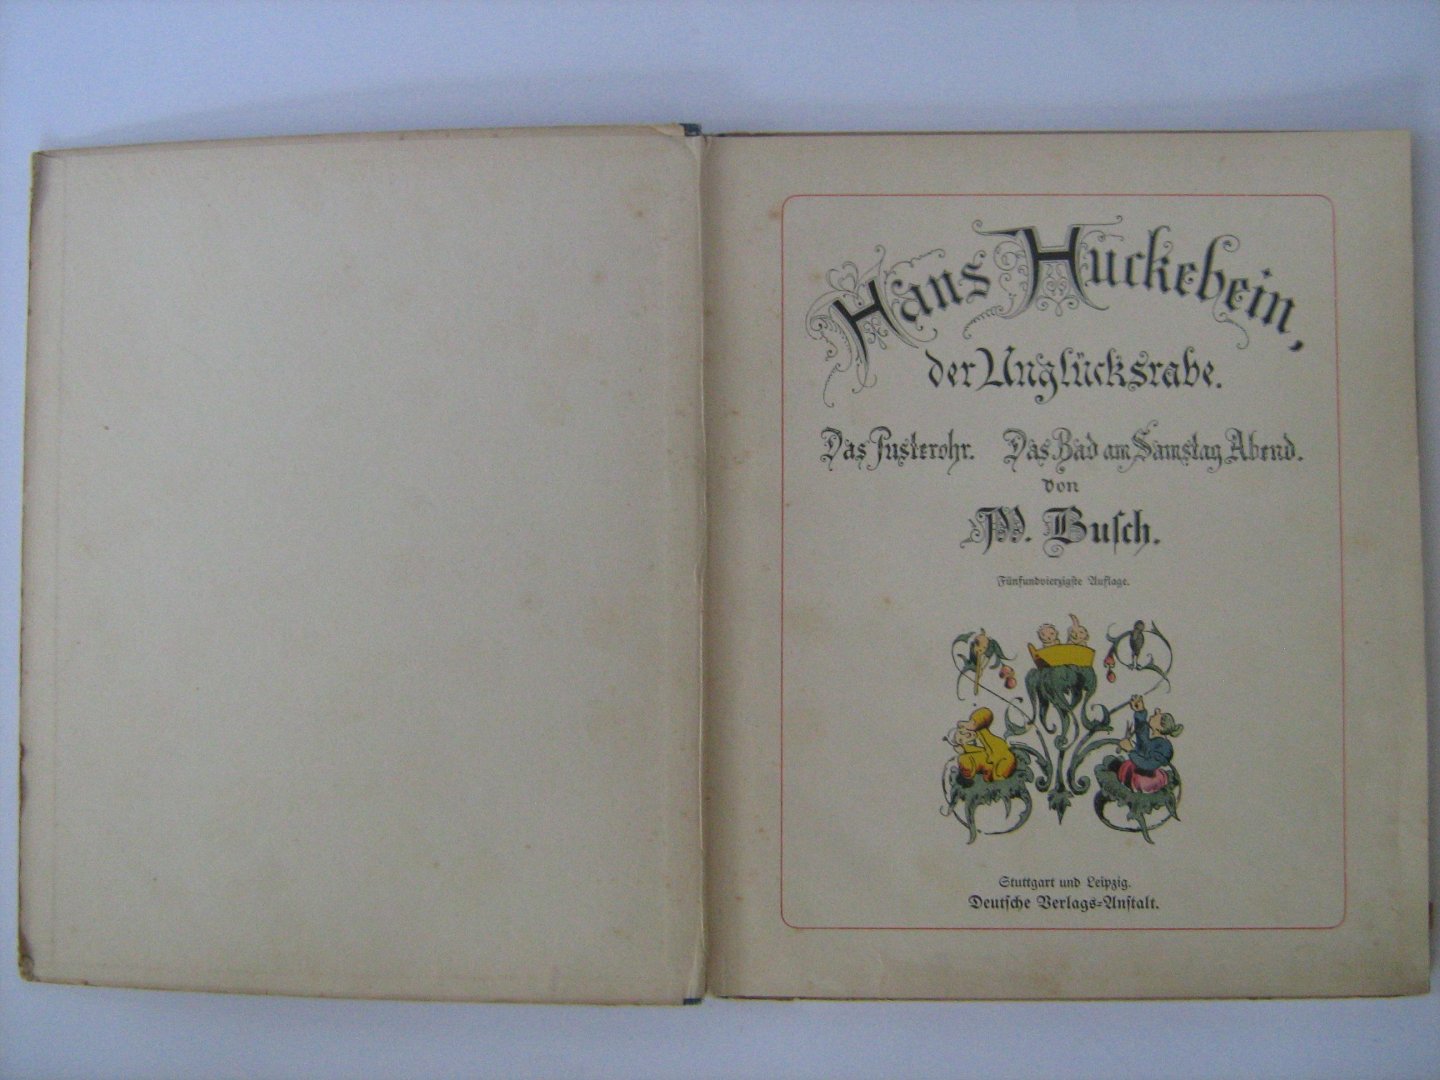 Busch, Wilhelm - Hans Huckebein, der Unglücksrabe. Das Pusterohr. Das Bad am Samstag Abend. Kolorierte Ausgabe 54e Auflage